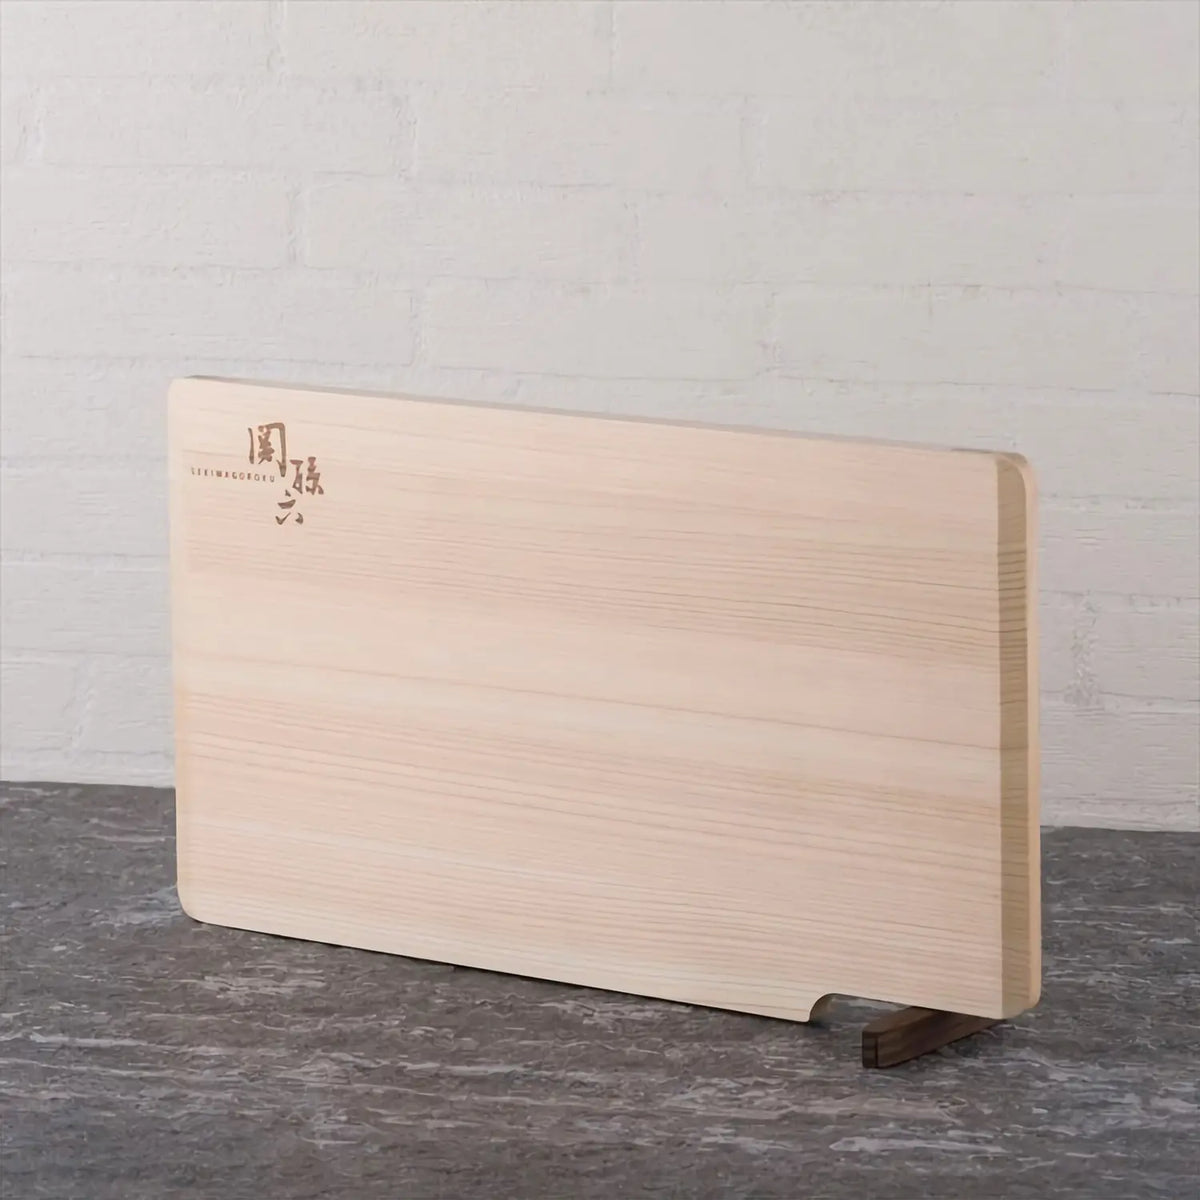 Seki Magoroku Hinoki Cypress Wood Cutting Board with Stand